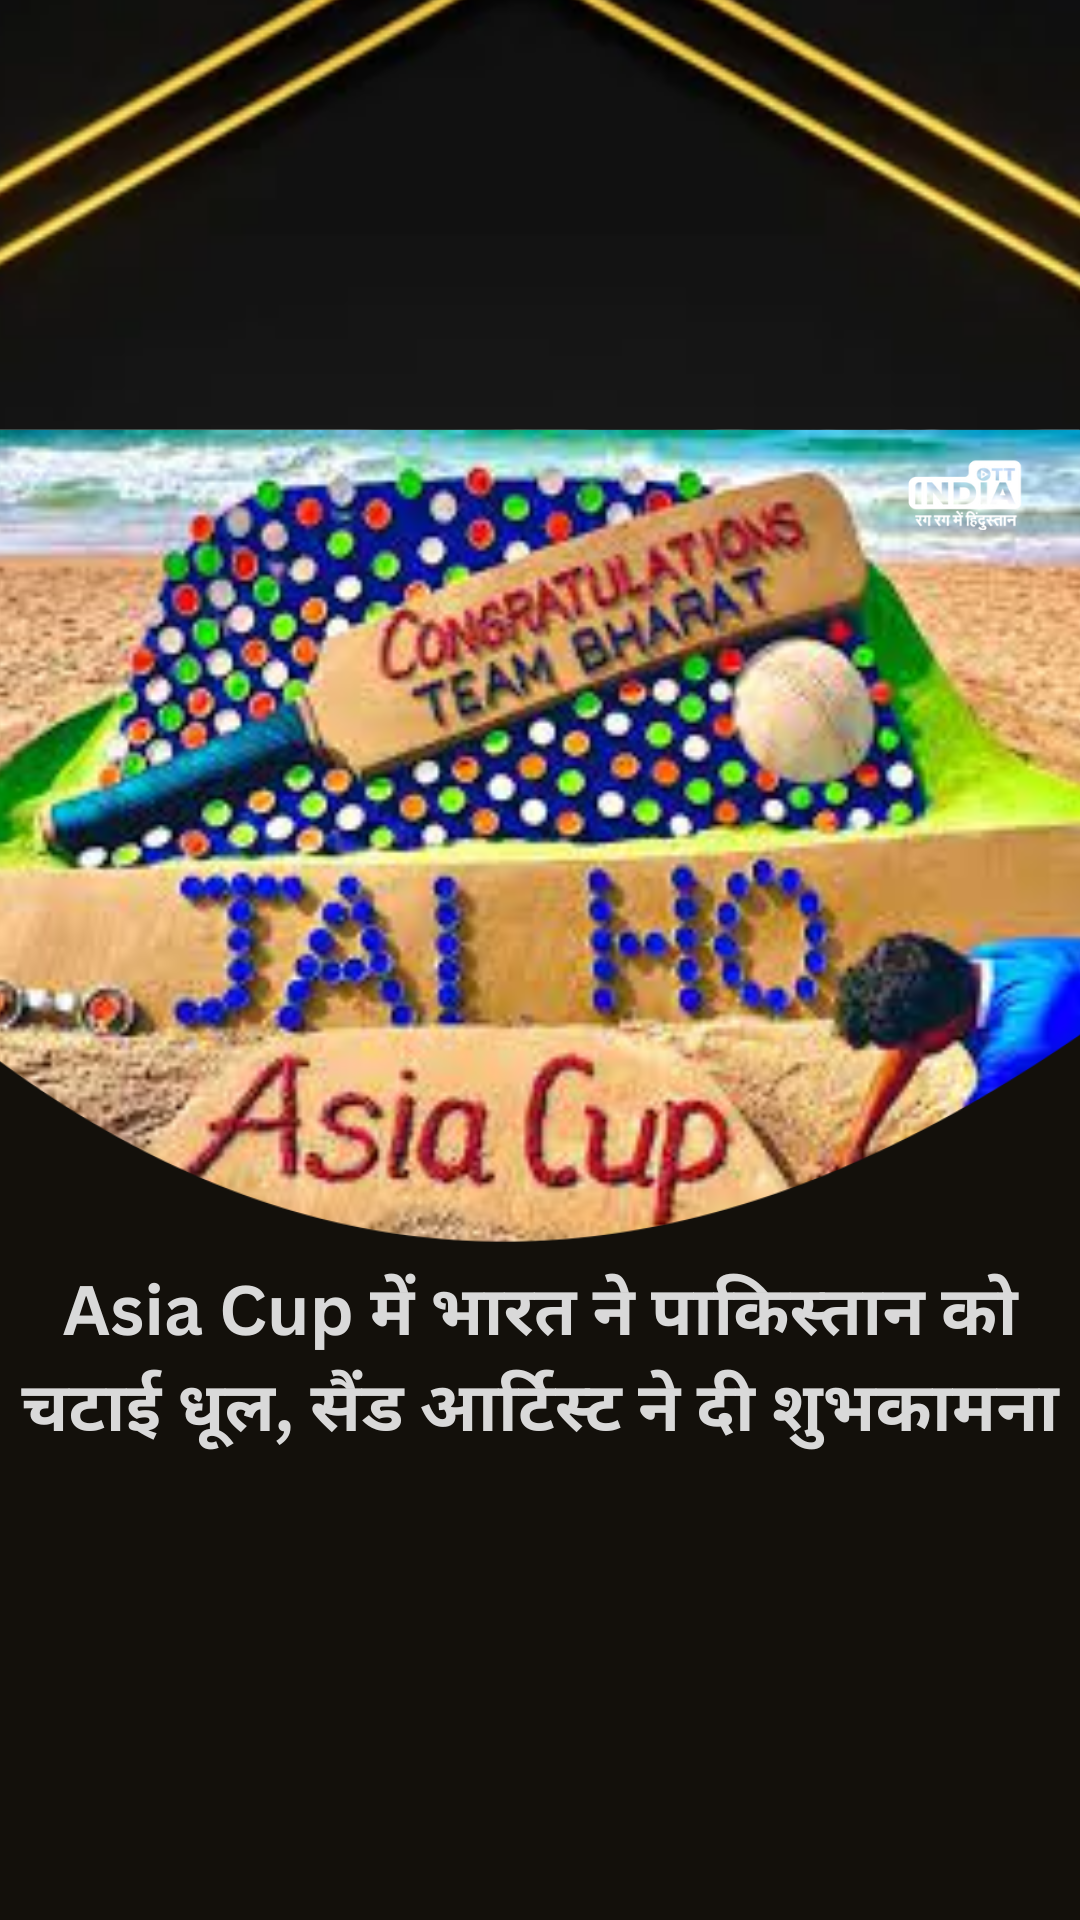 Asia Cup में भारत ने पाकिस्तान को चटाई धूल, सैंड आर्टिस्ट सुदर्शन पटनायक ने दी इस तरह शुभकामना…